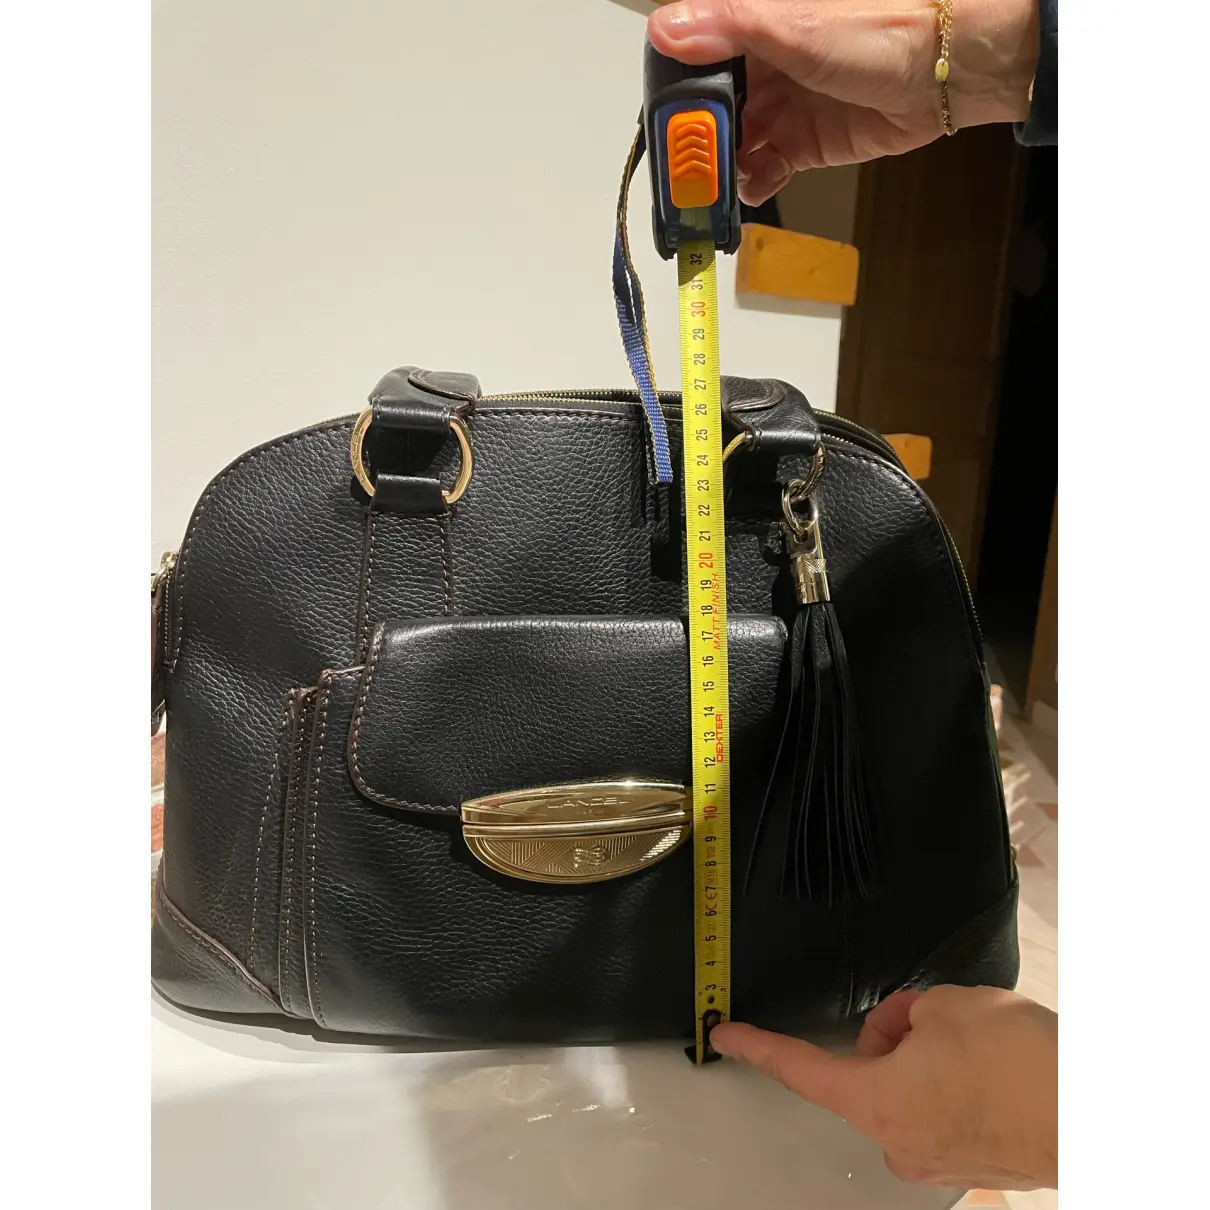 Mademoiselle Adjani leather handbag Lancel